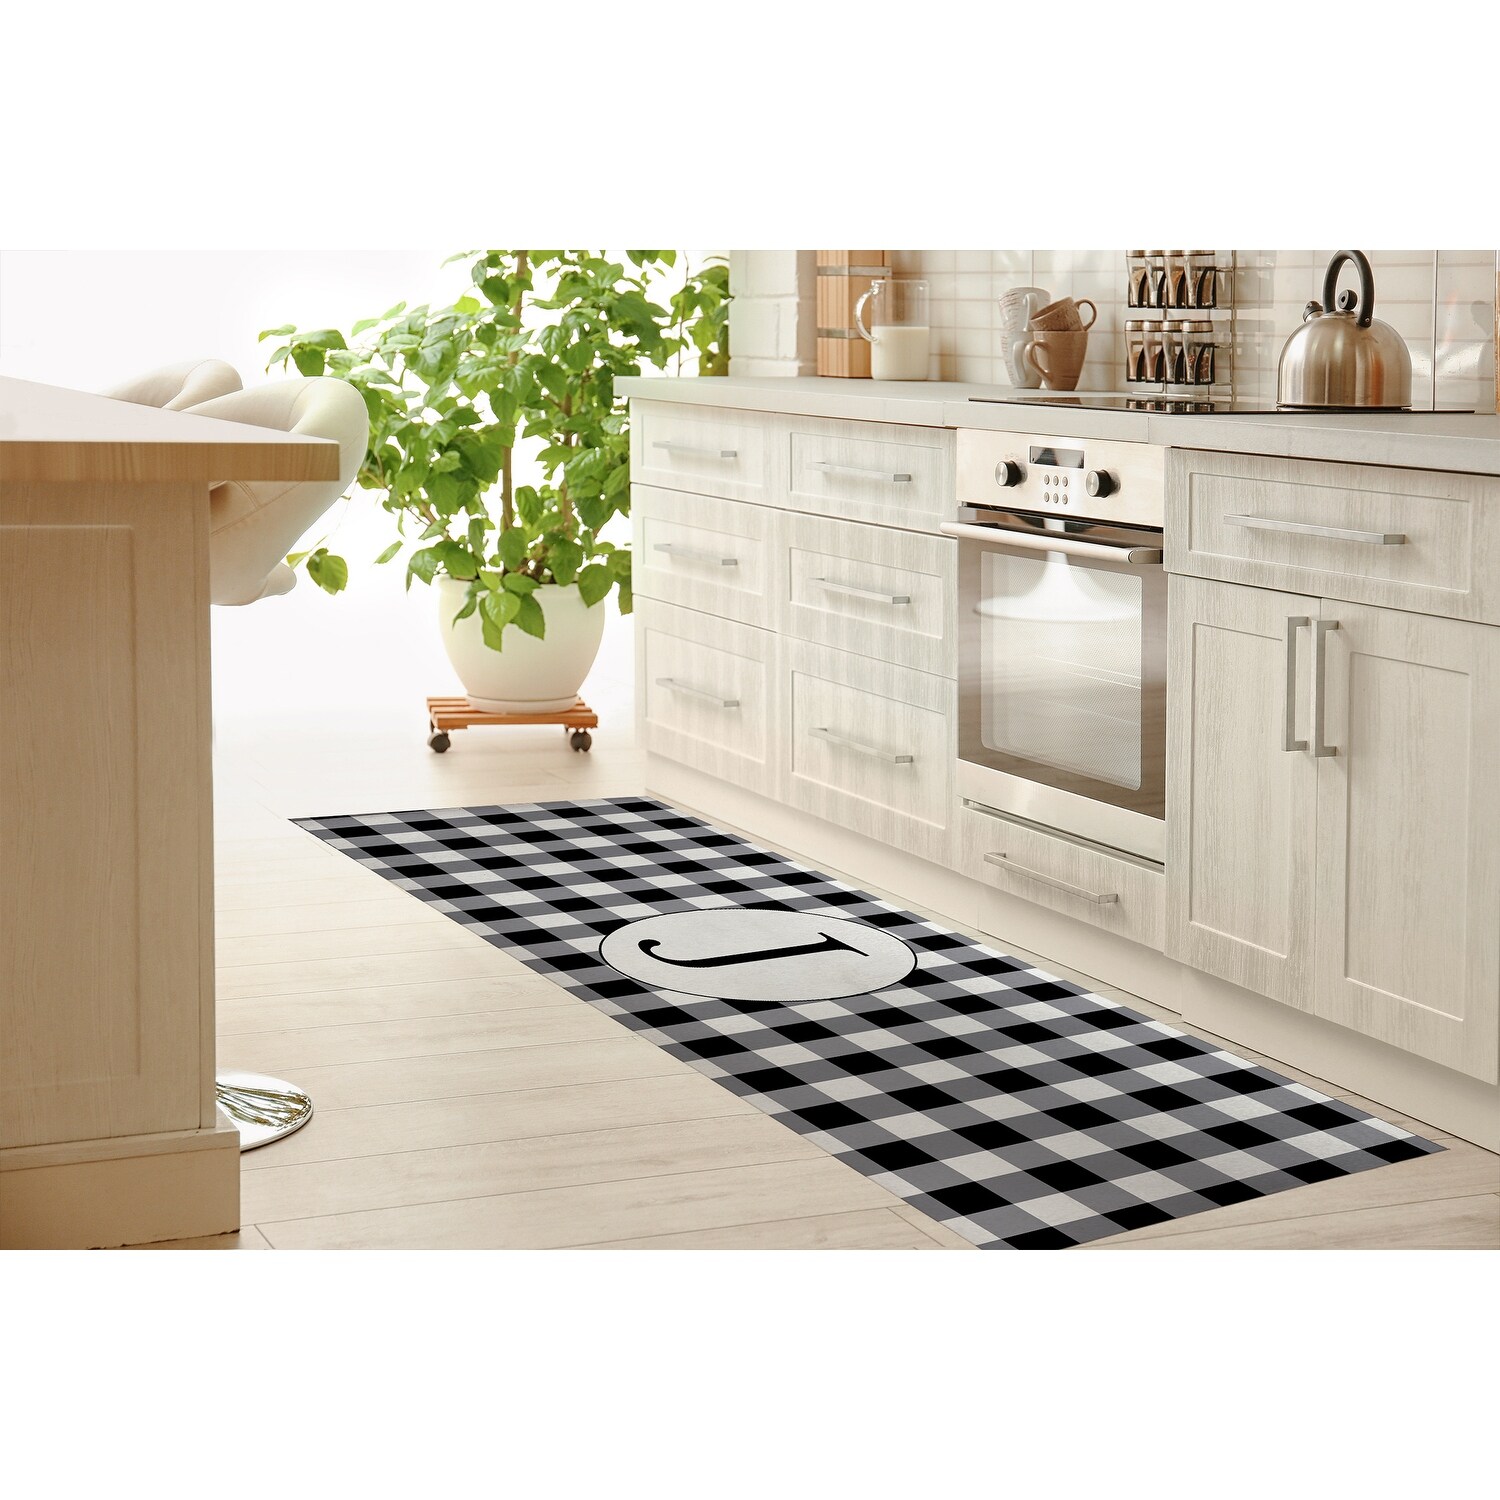 MONO BLACK & WHITE J Kitchen Mat By Kavka Designs - Bed Bath & Beyond -  32759097